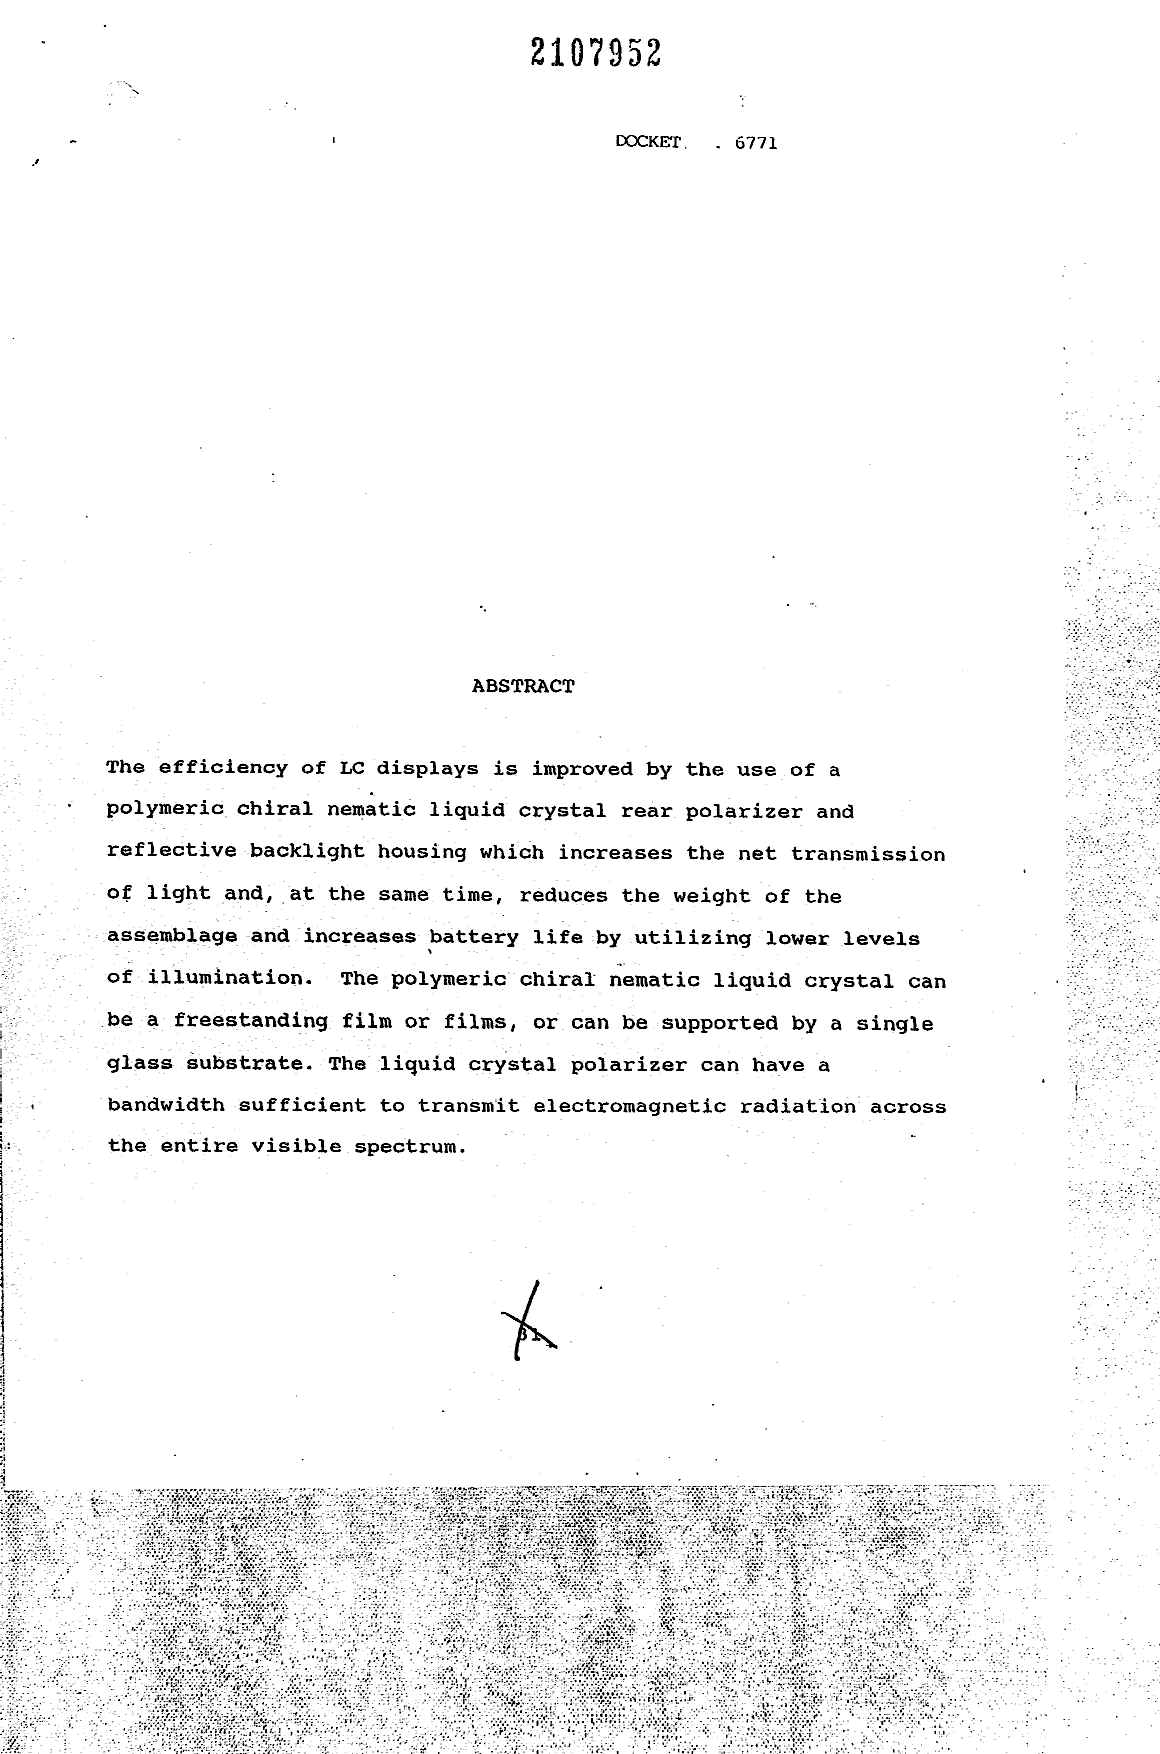 Document de brevet canadien 2107952. Abrégé 19950318. Image 1 de 1